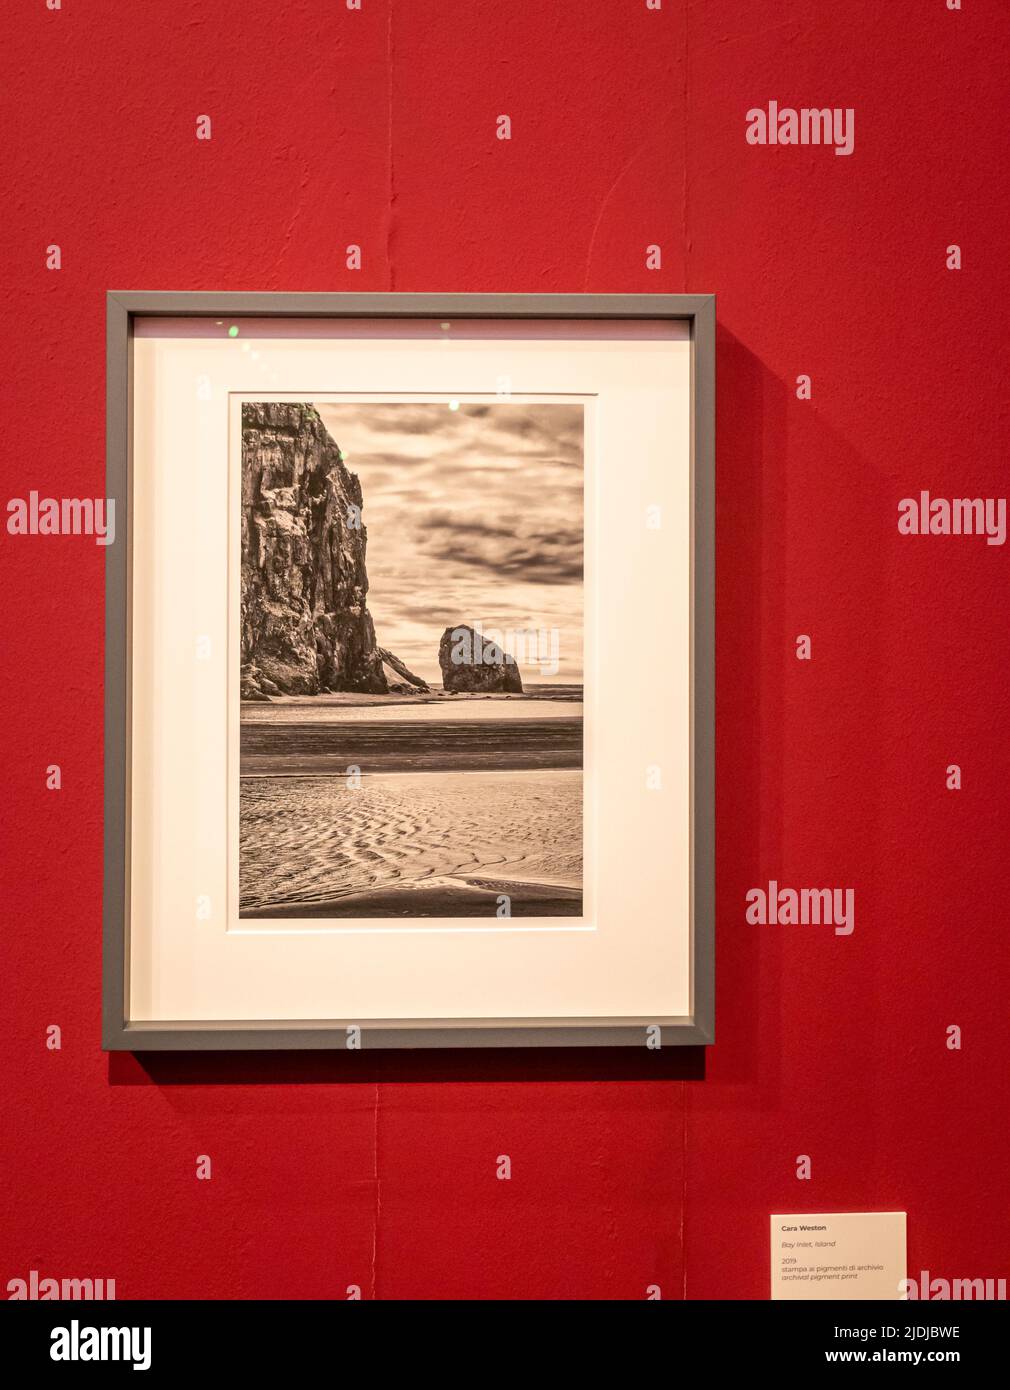 Photographie « Surf at Sunset – Garrapata-Big sur » – 2012 de la photographe Cara Weston-exposition au Musée Santa Giulia de Brescia, Italie. Banque D'Images